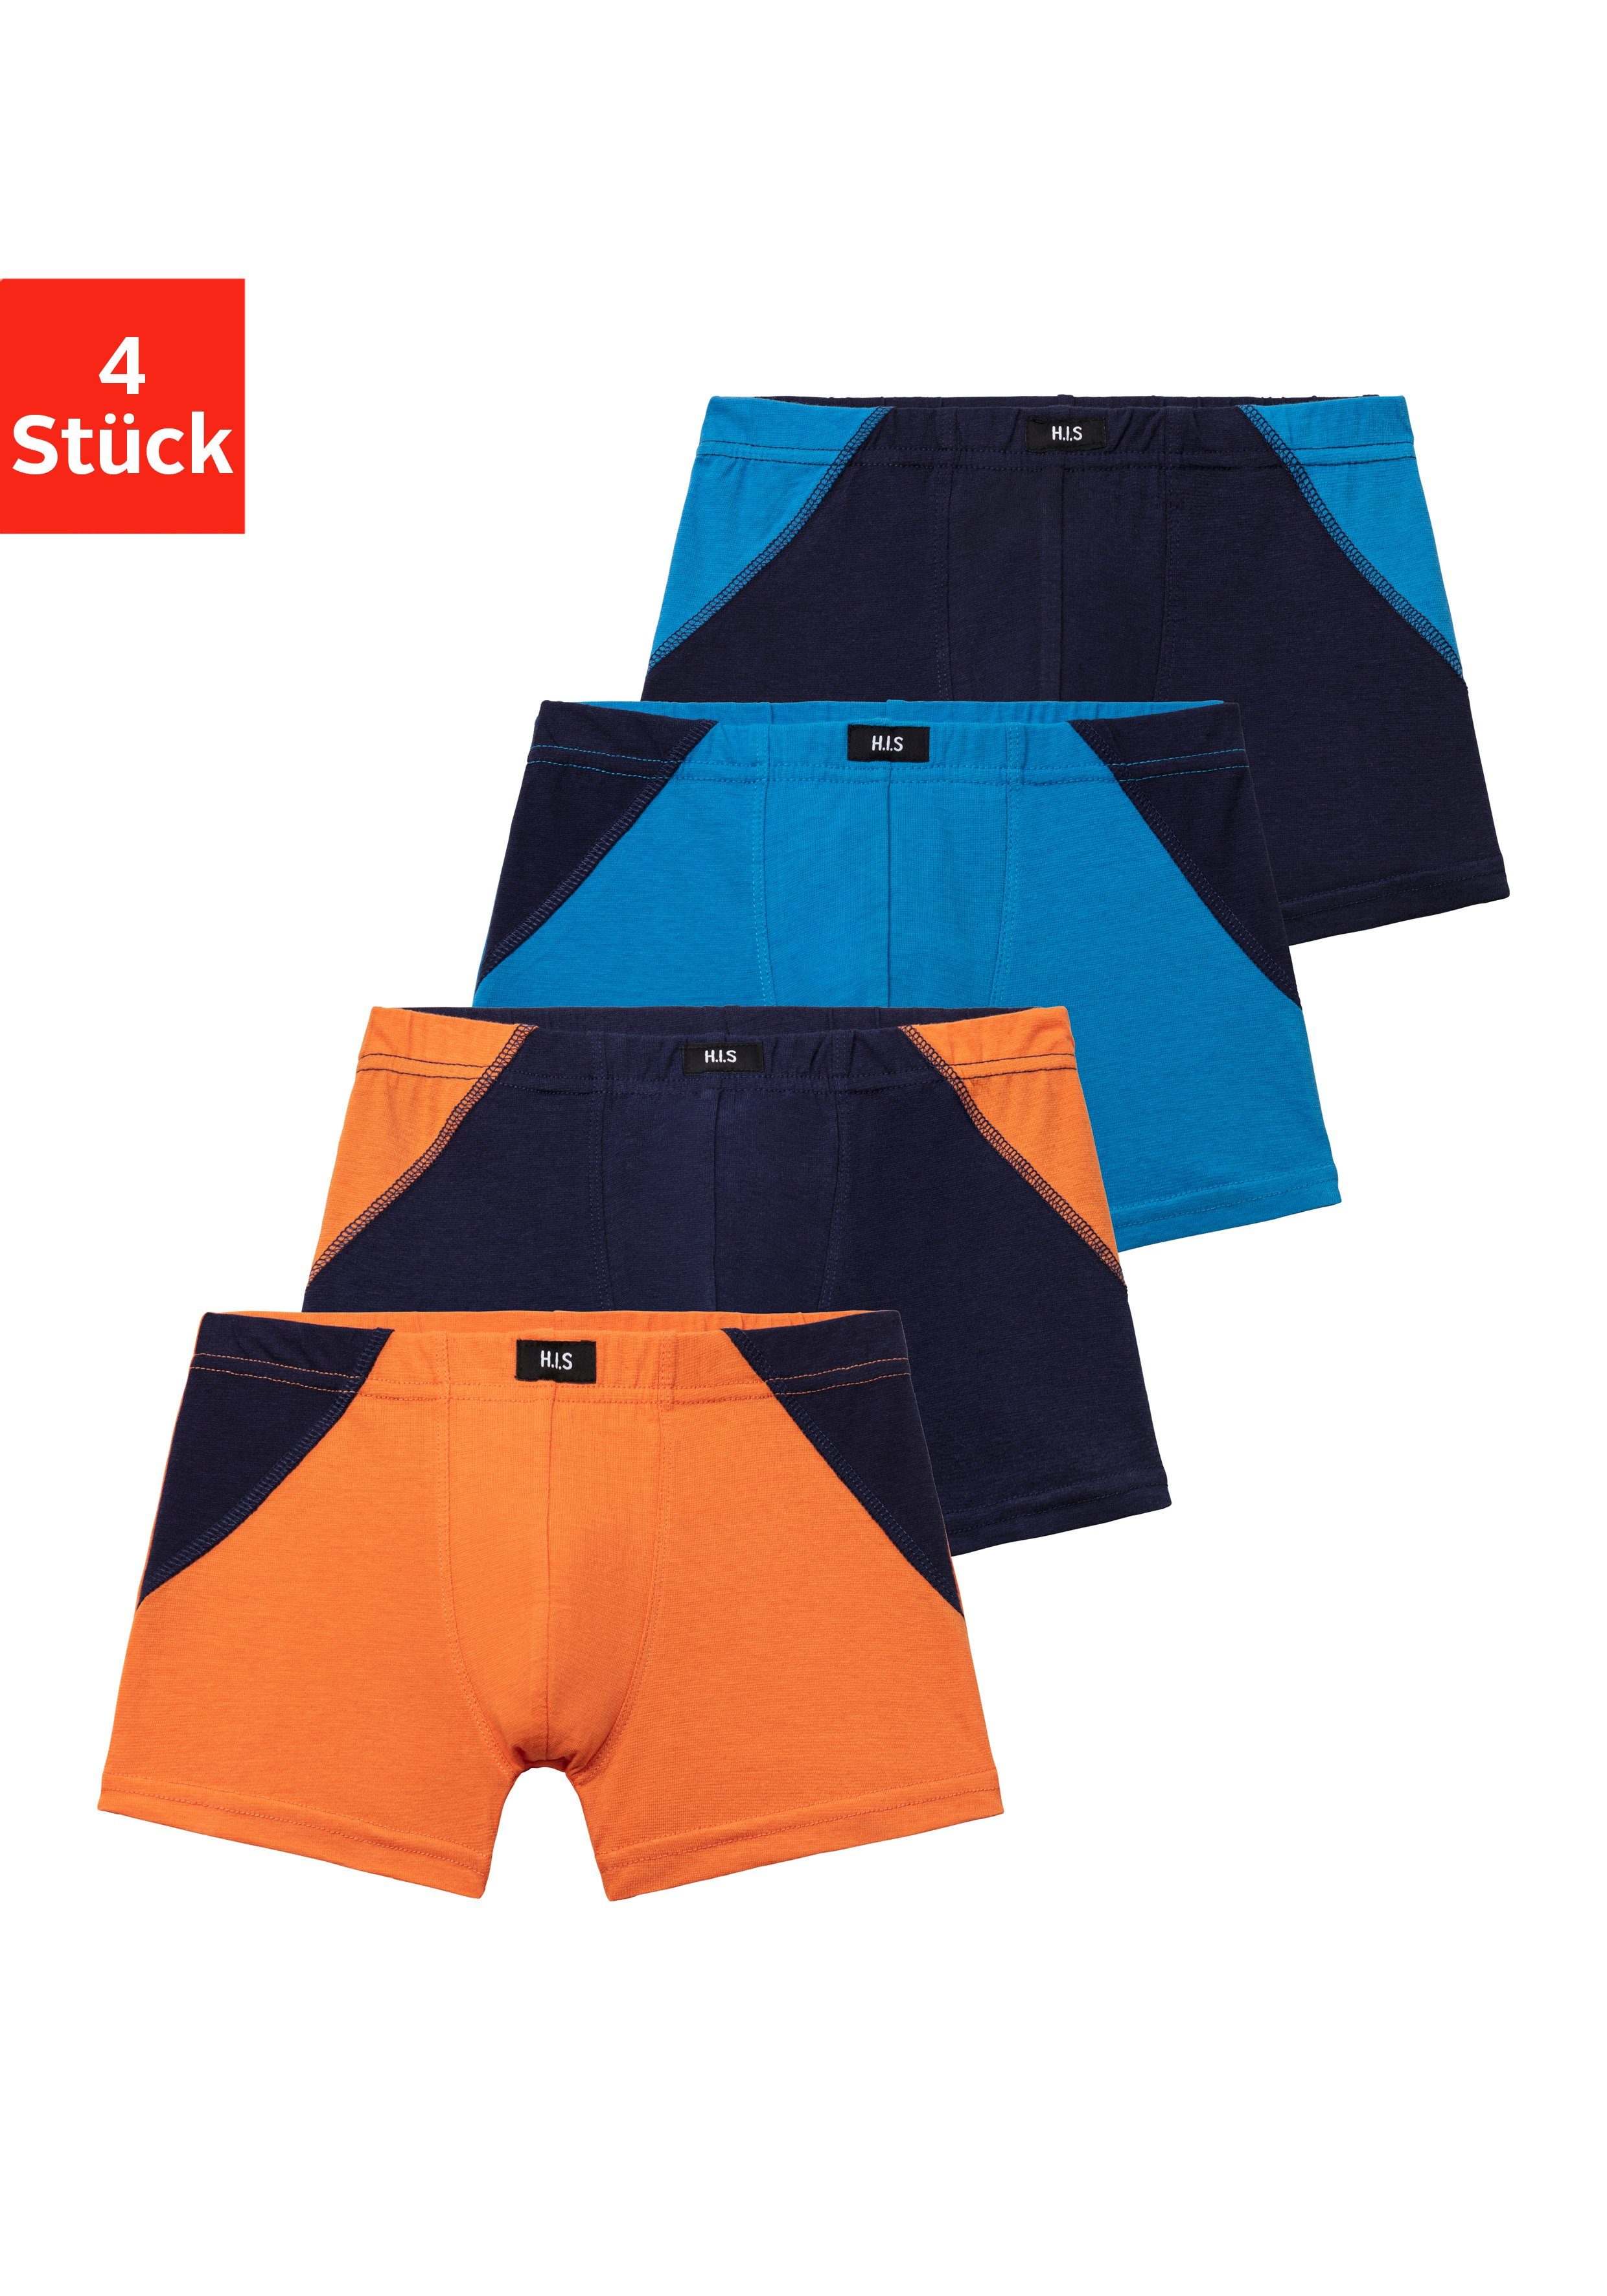 H.I.S Boxer (Packung, 4-St) mit coolem Colorblocking für einen sportlichen Auftritt marine-blau, blau-marine, orange-marine, marine-orange